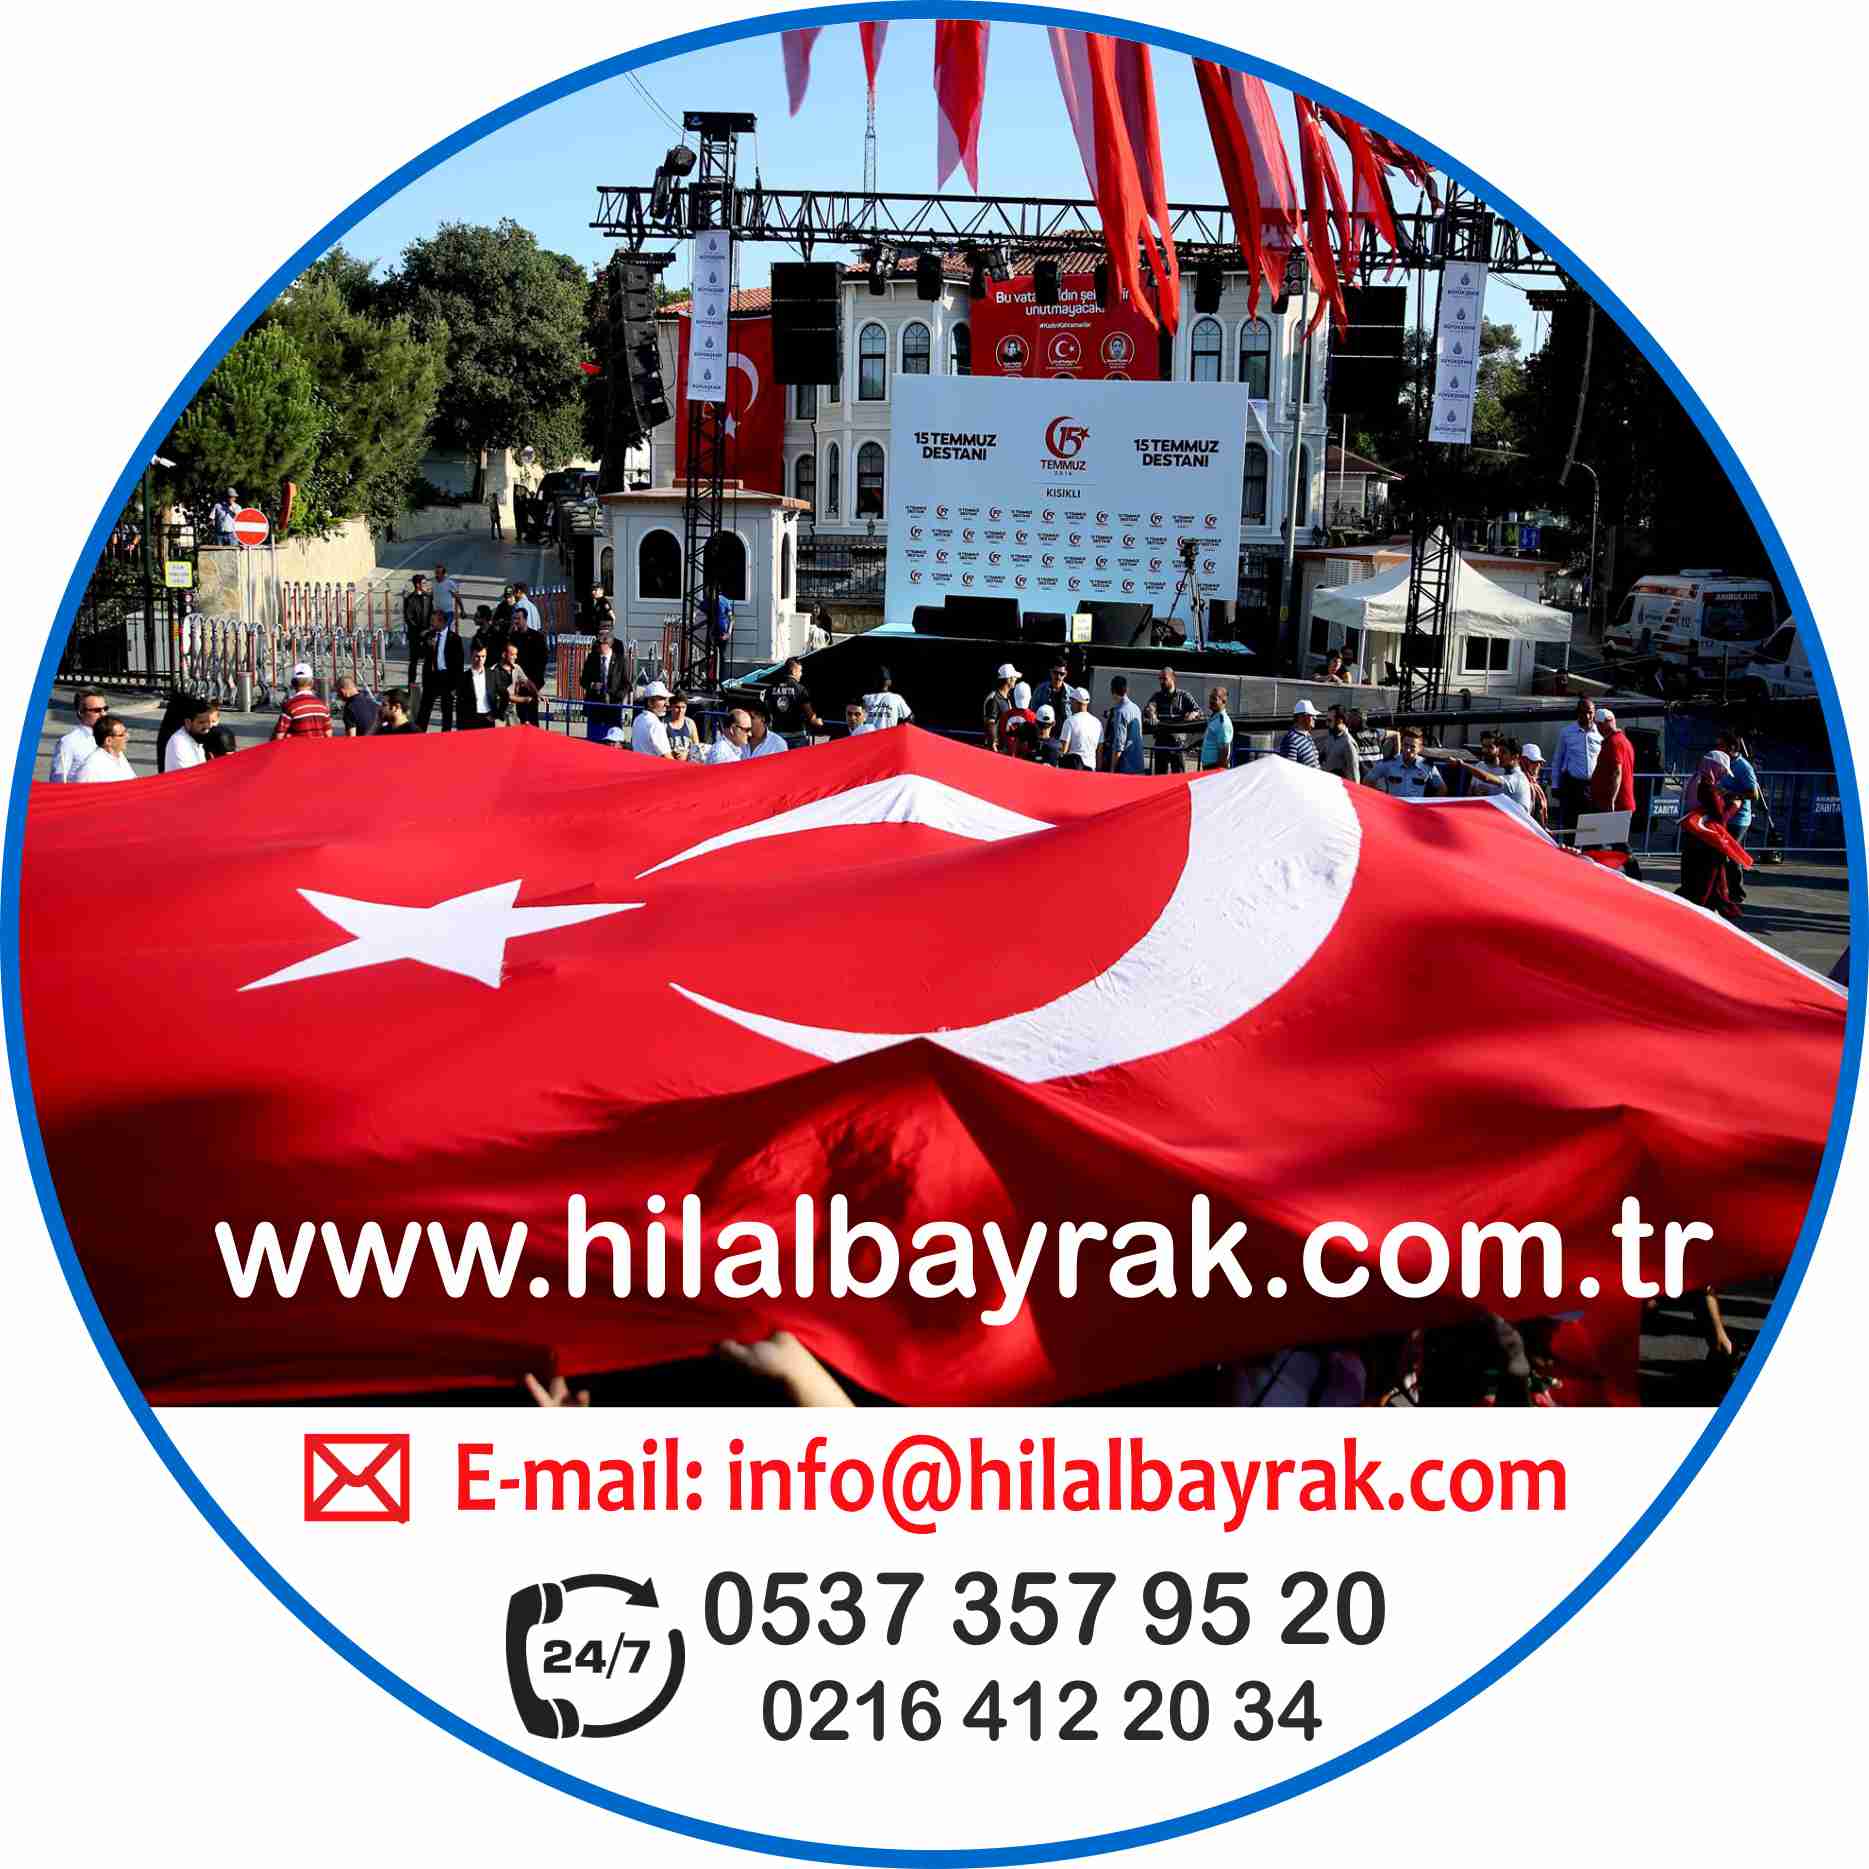 türk bayrağı, türk bayrak direği, türk bayrakları, türk bayrak, makam bayrağı fiyatı, türk bayrağı fiyatları, türk bayrağı, gönder türk bayrağı, türk bayrak İstanbu ümraniye